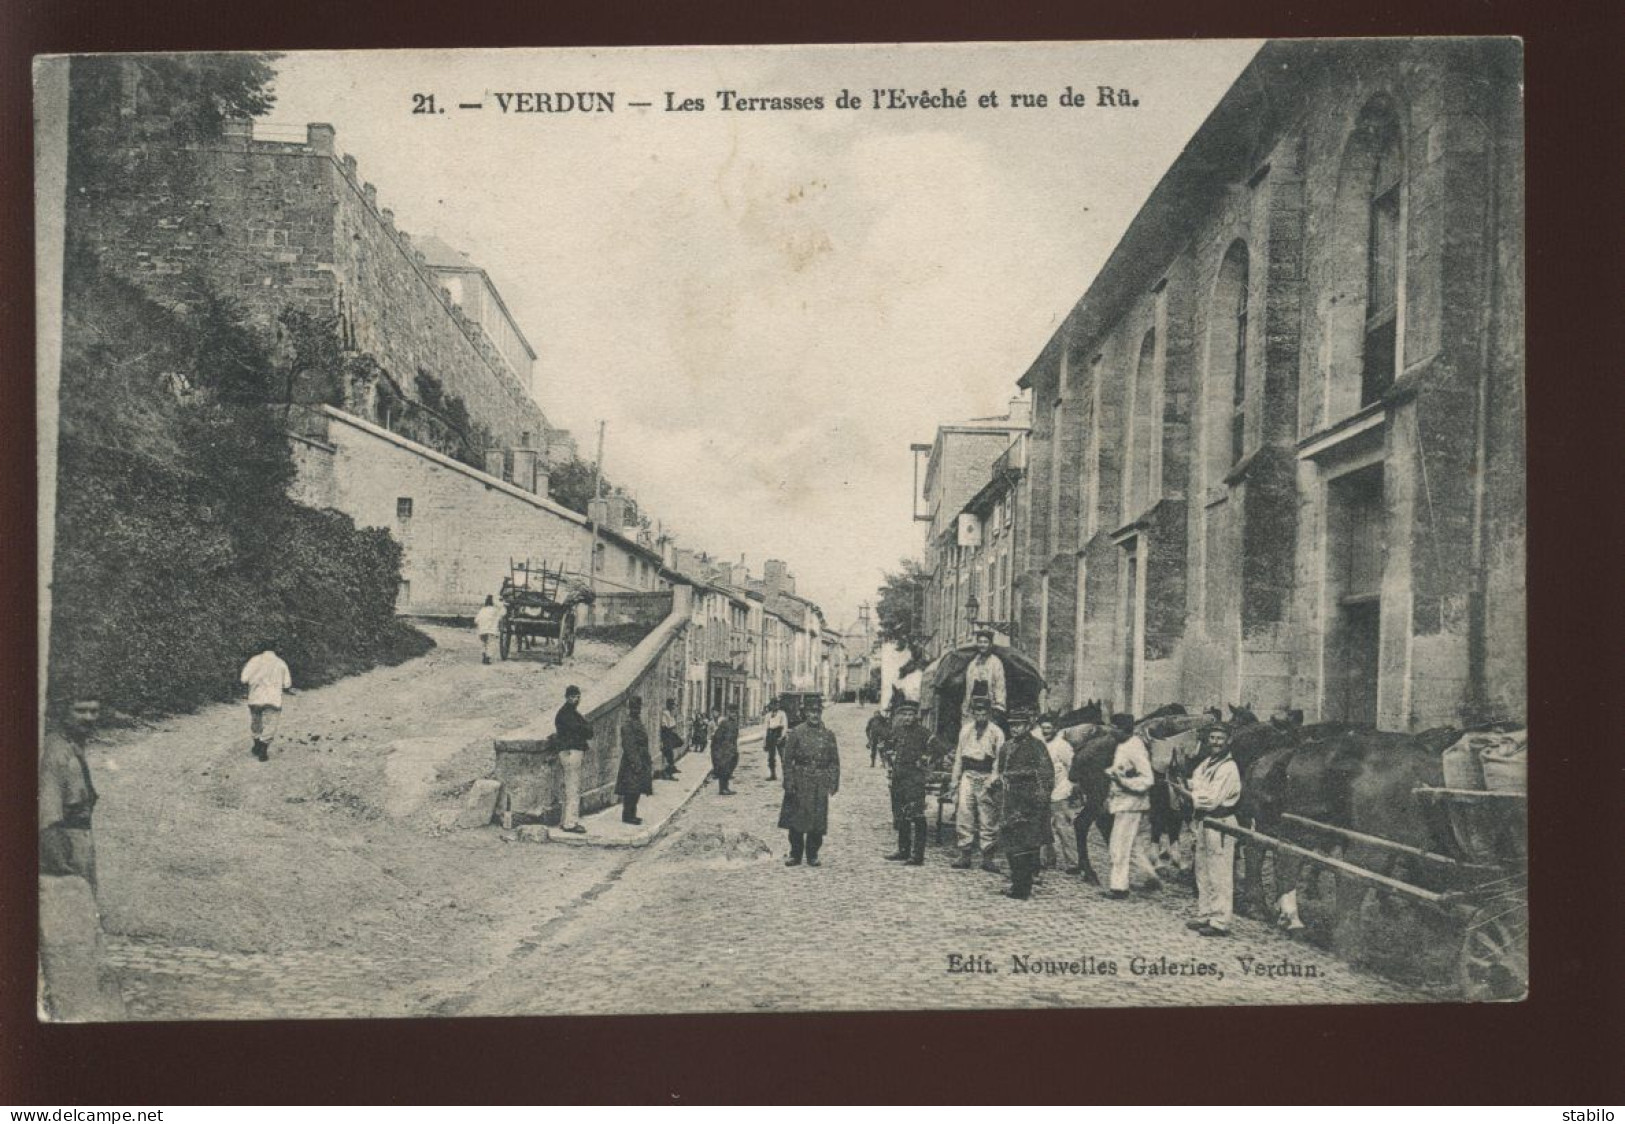 55 - VERDUN - LES TERRASSES DE L'EVEVCHE ET RUE DE RU - EDITION DES NOUVELLES GALERIES - Verdun